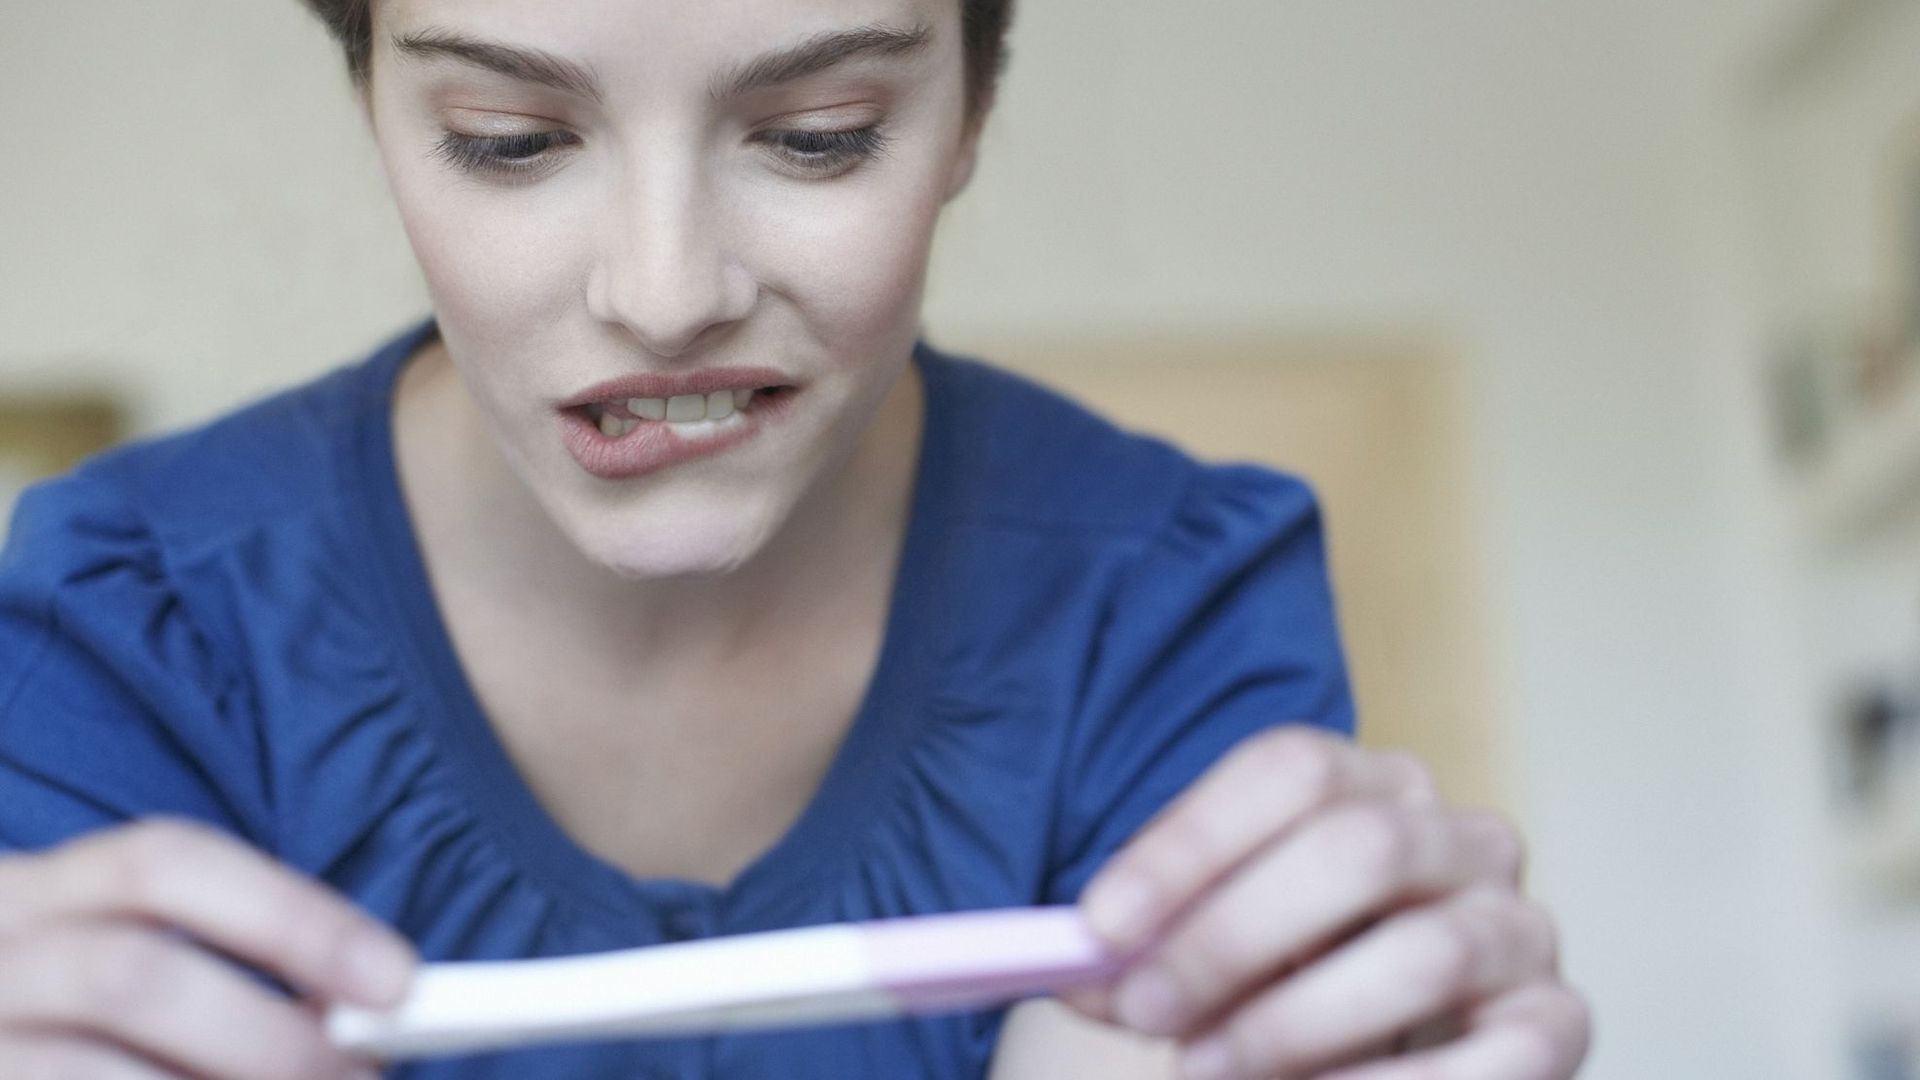 Le désir d'enfant face aux causes trop mal connues de l'infertilité.